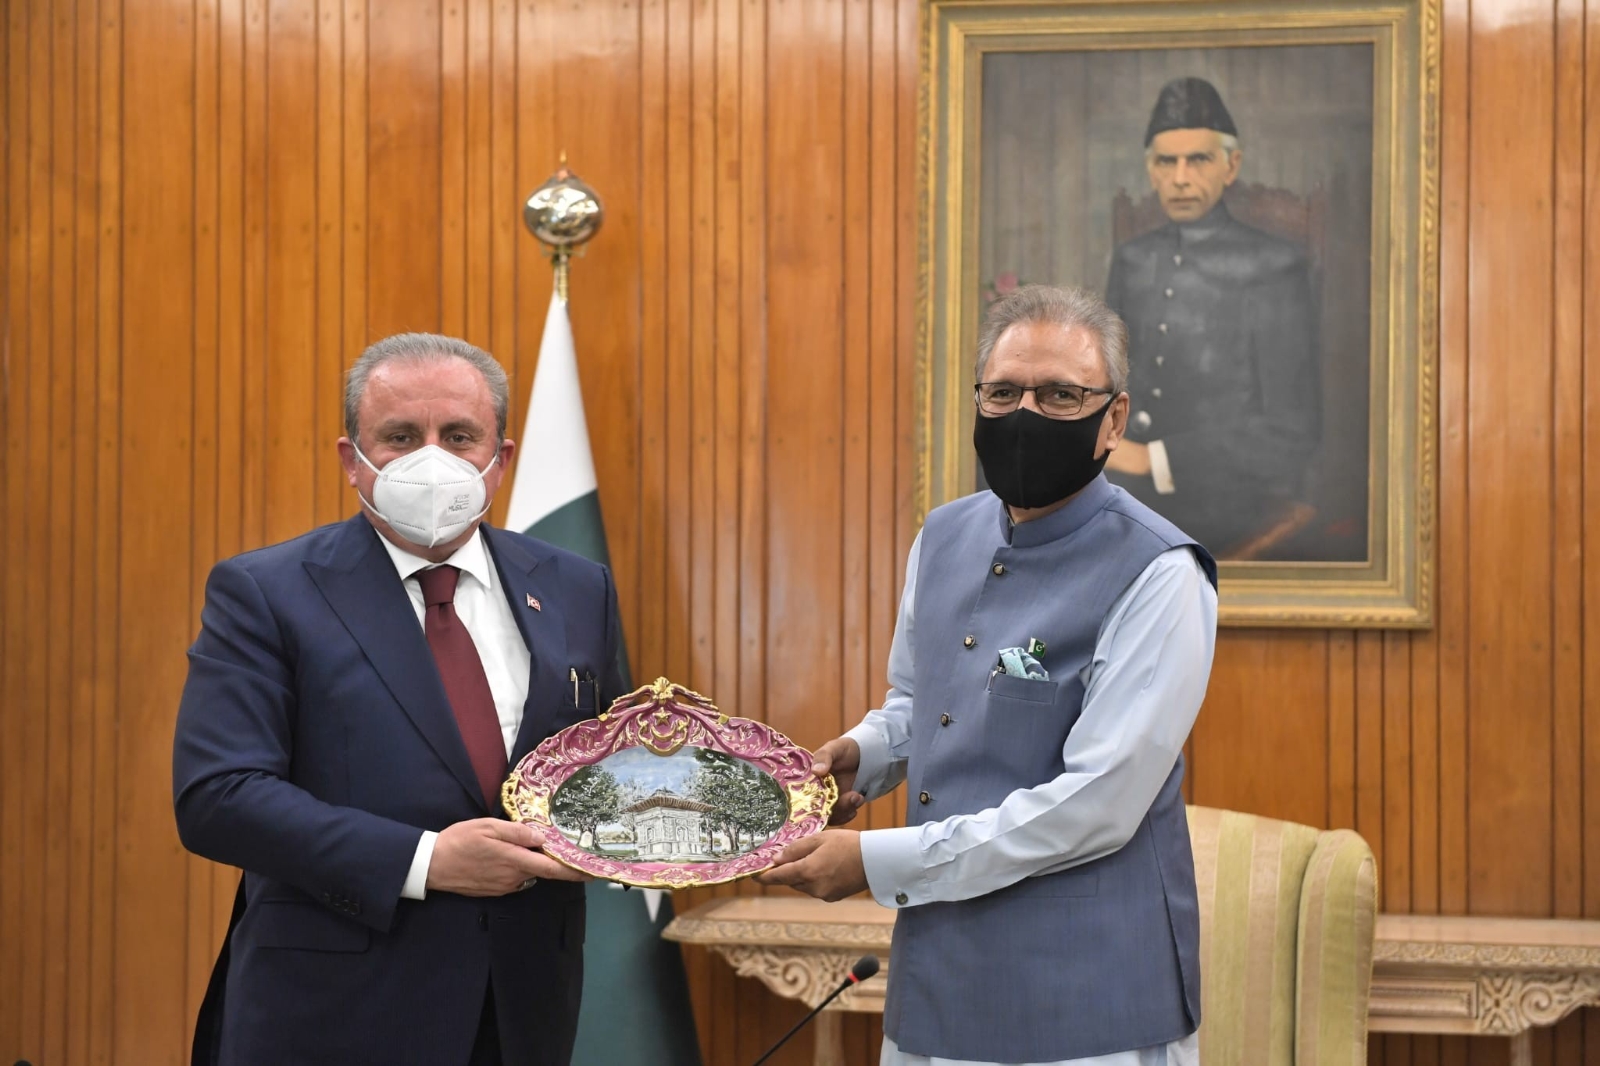 TBMM Başkanı Şentop, Pakistan Cumhurbaşkanı Alvi tarafından kabul edildi